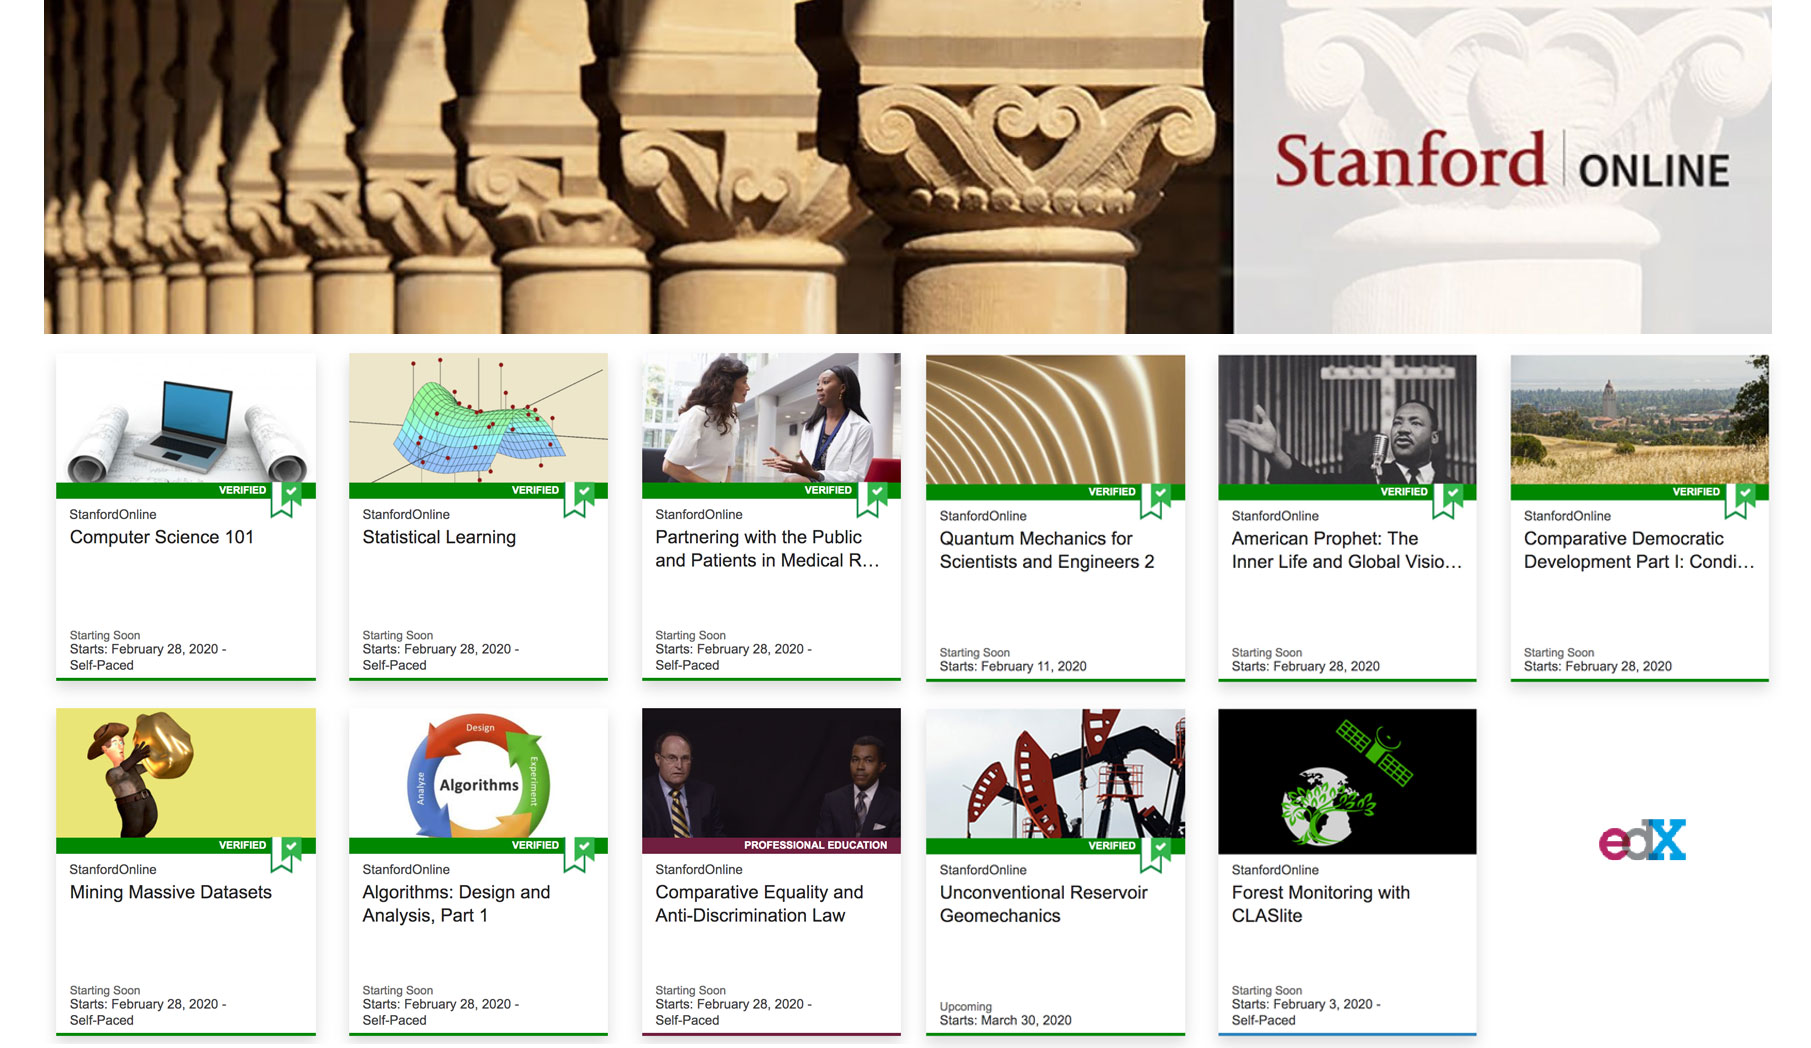 Đại học Stanford và edX là những ngôi trường danh giá về đào tạo trực tuyến. Hãy khám phá hình ảnh liên quan đến hai ngôi trường này để được trải nghiệm học tập và trau dồi kiến thức hiệu quả nhất.